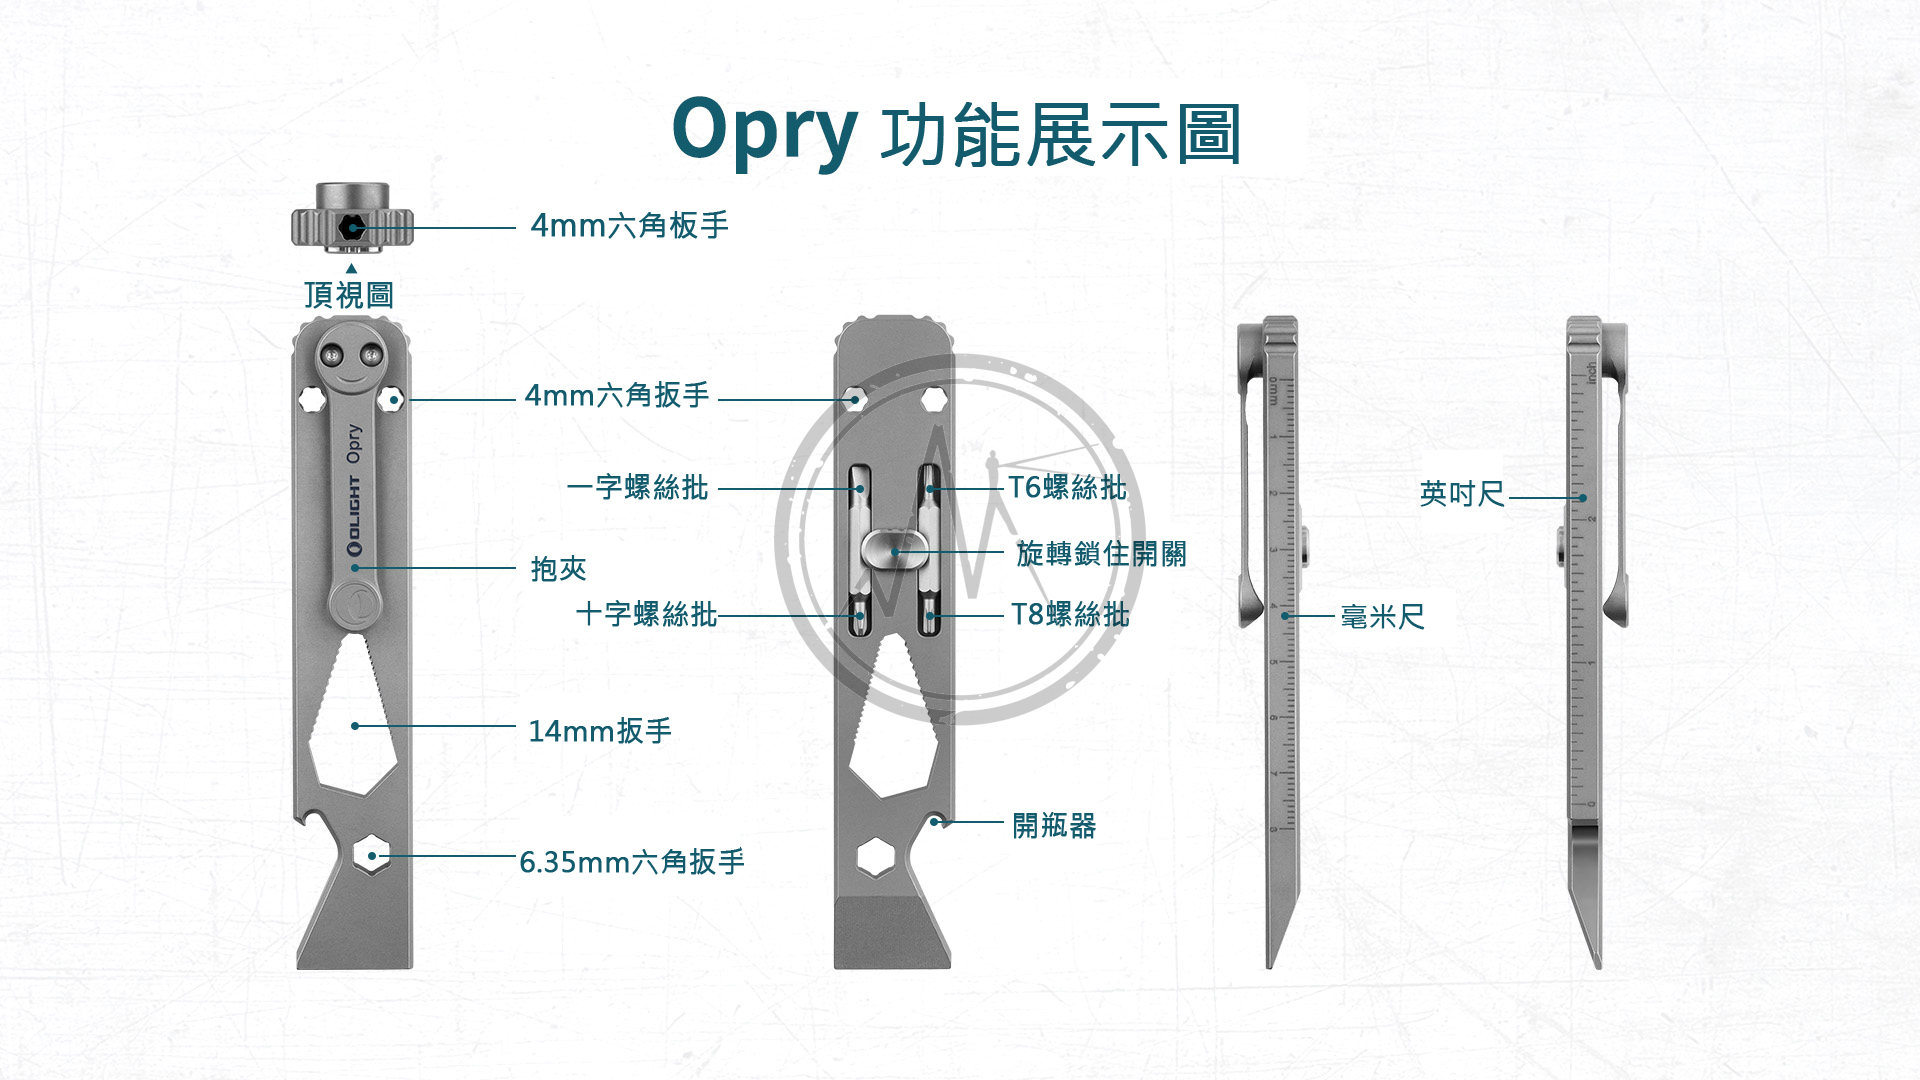 Olight Opry TC4 鈦合金多功能工具組 5合1 六角/一字/十字/扳手/T6螺絲/T8螺絲